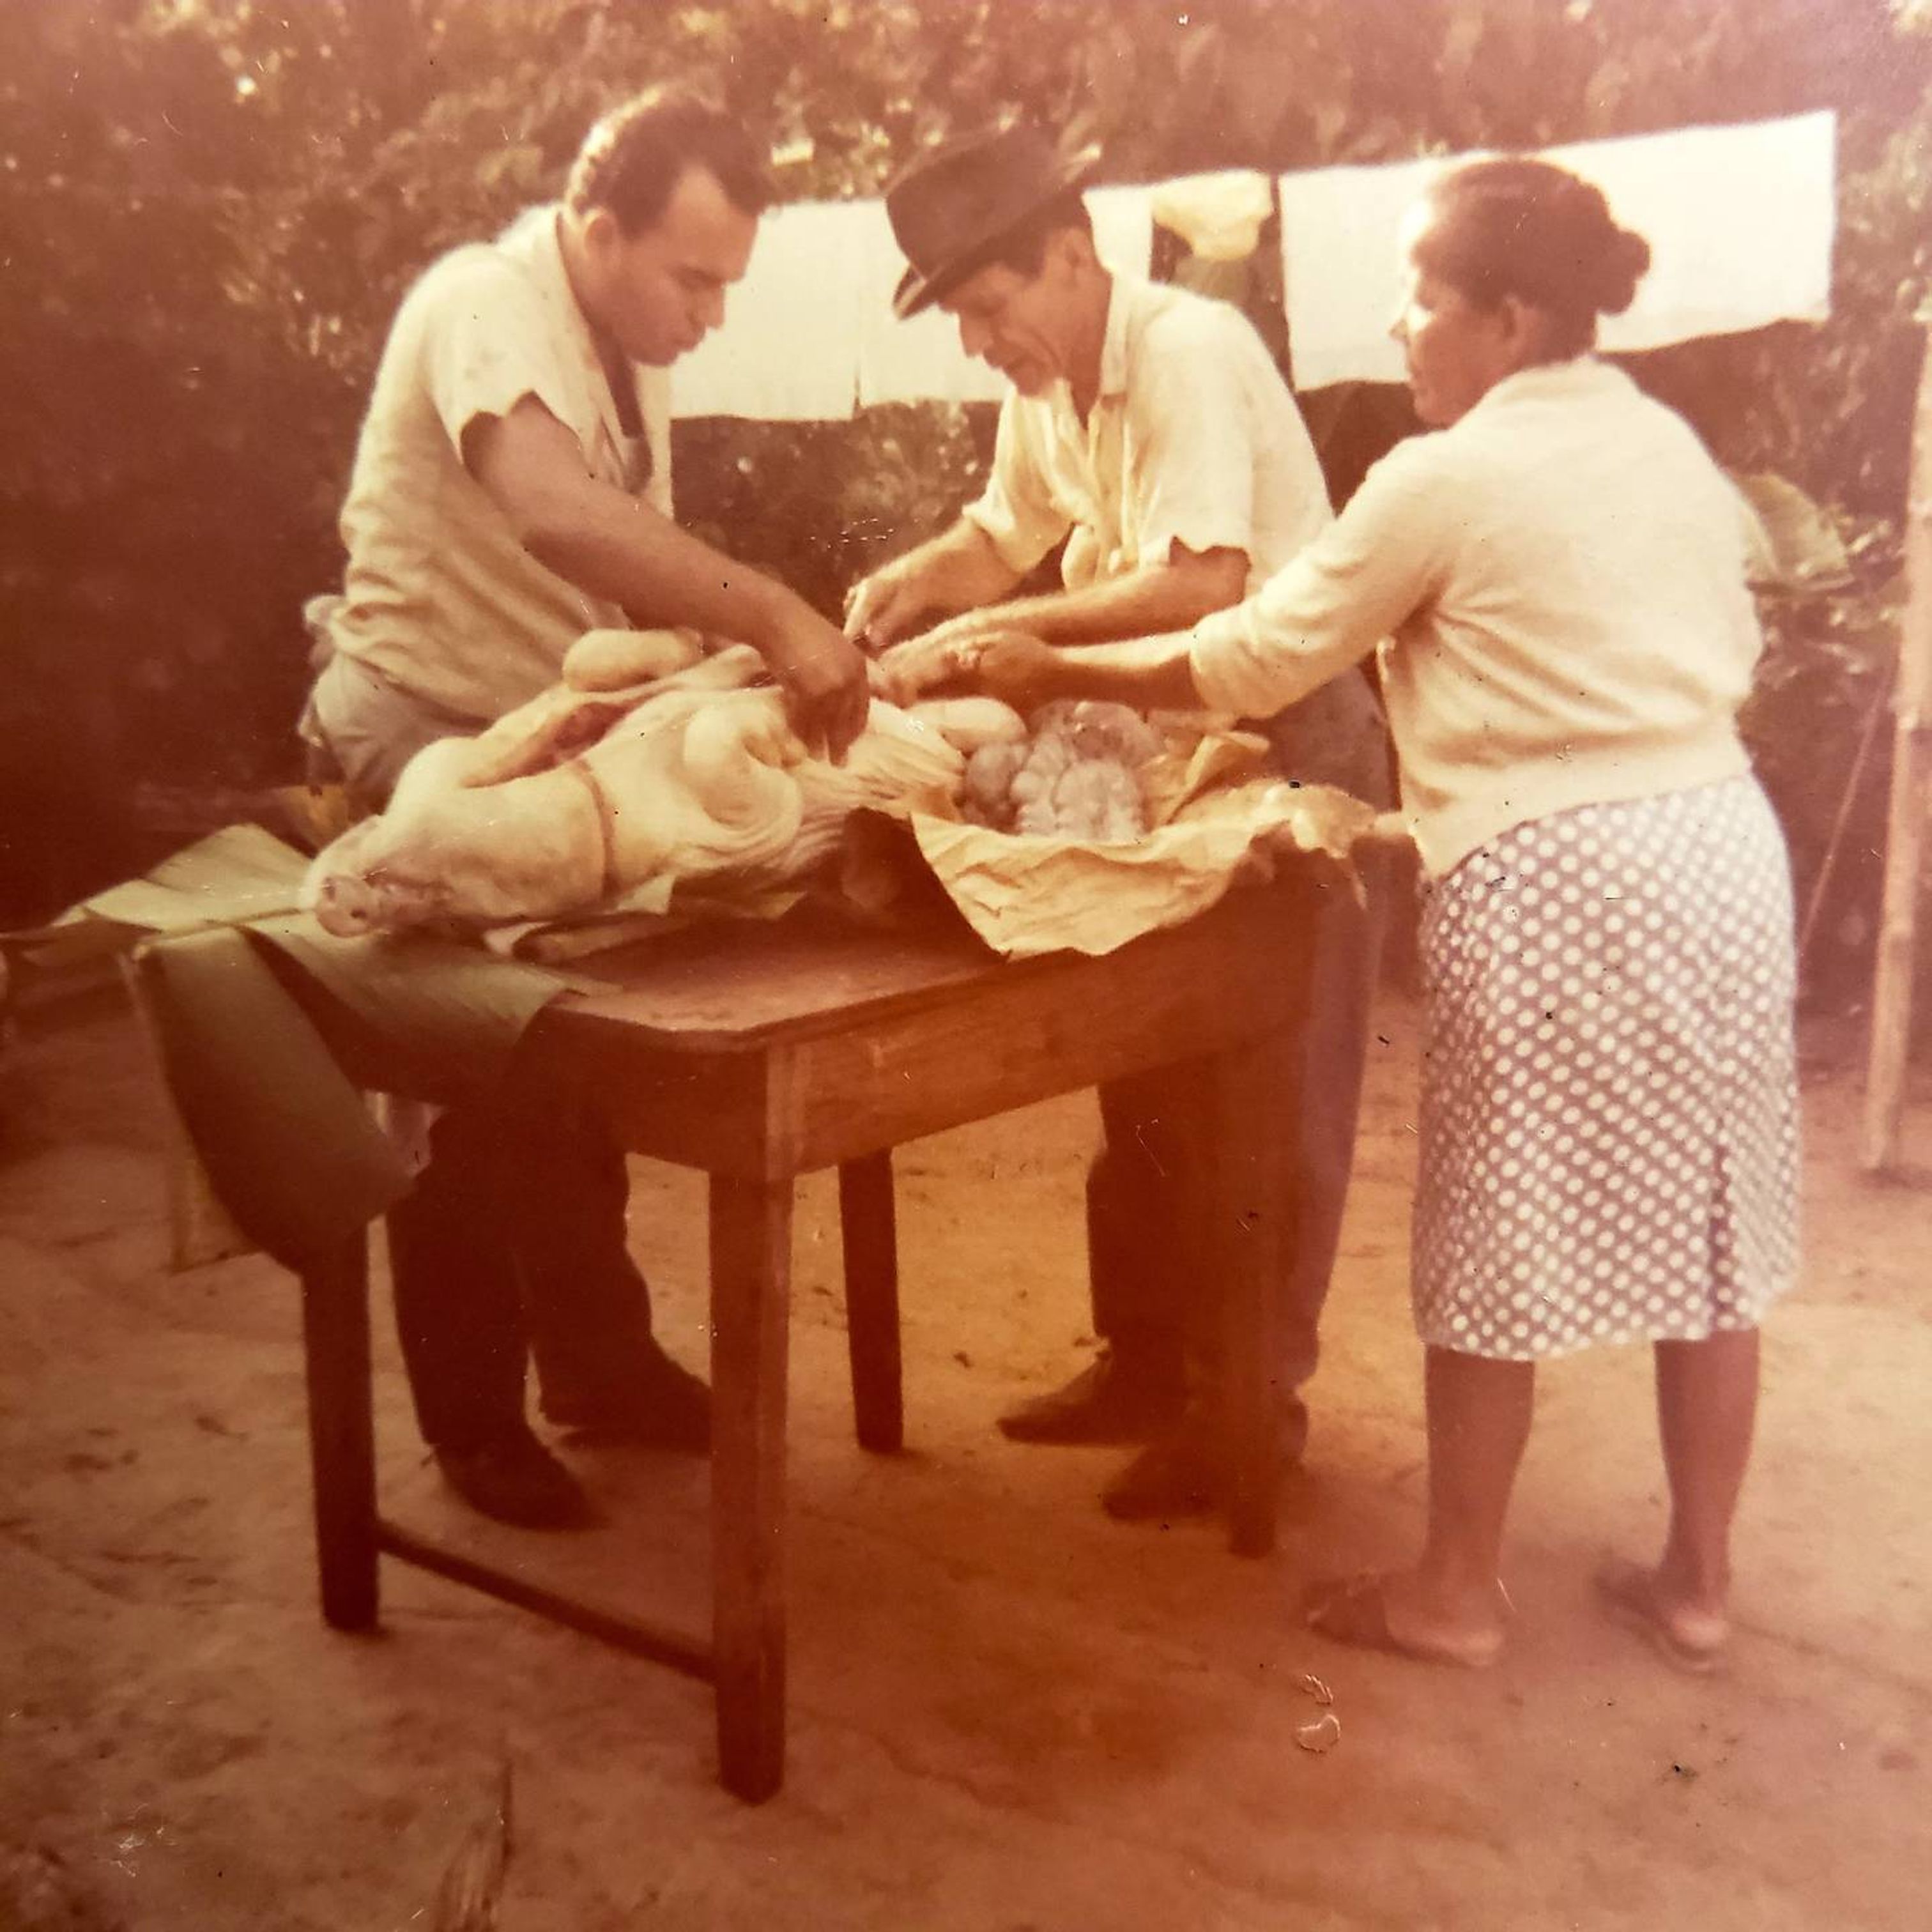 Nettie Colón's grandma and family butcher a pig